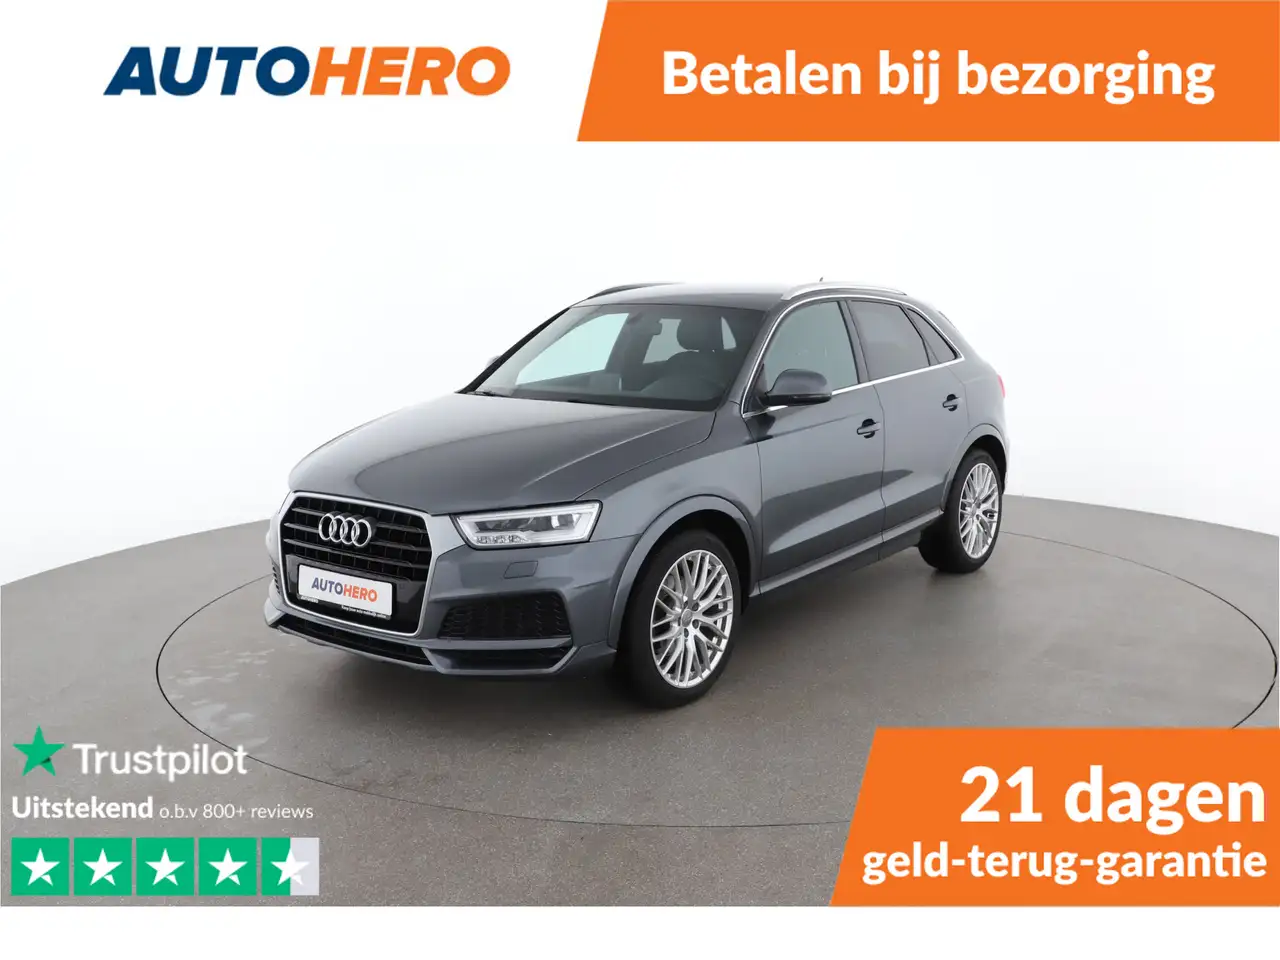 Audi Q3 SUV/4x4/Pick-up in Grijs tweedehands in AMSTERDAM voor € 22.249,-